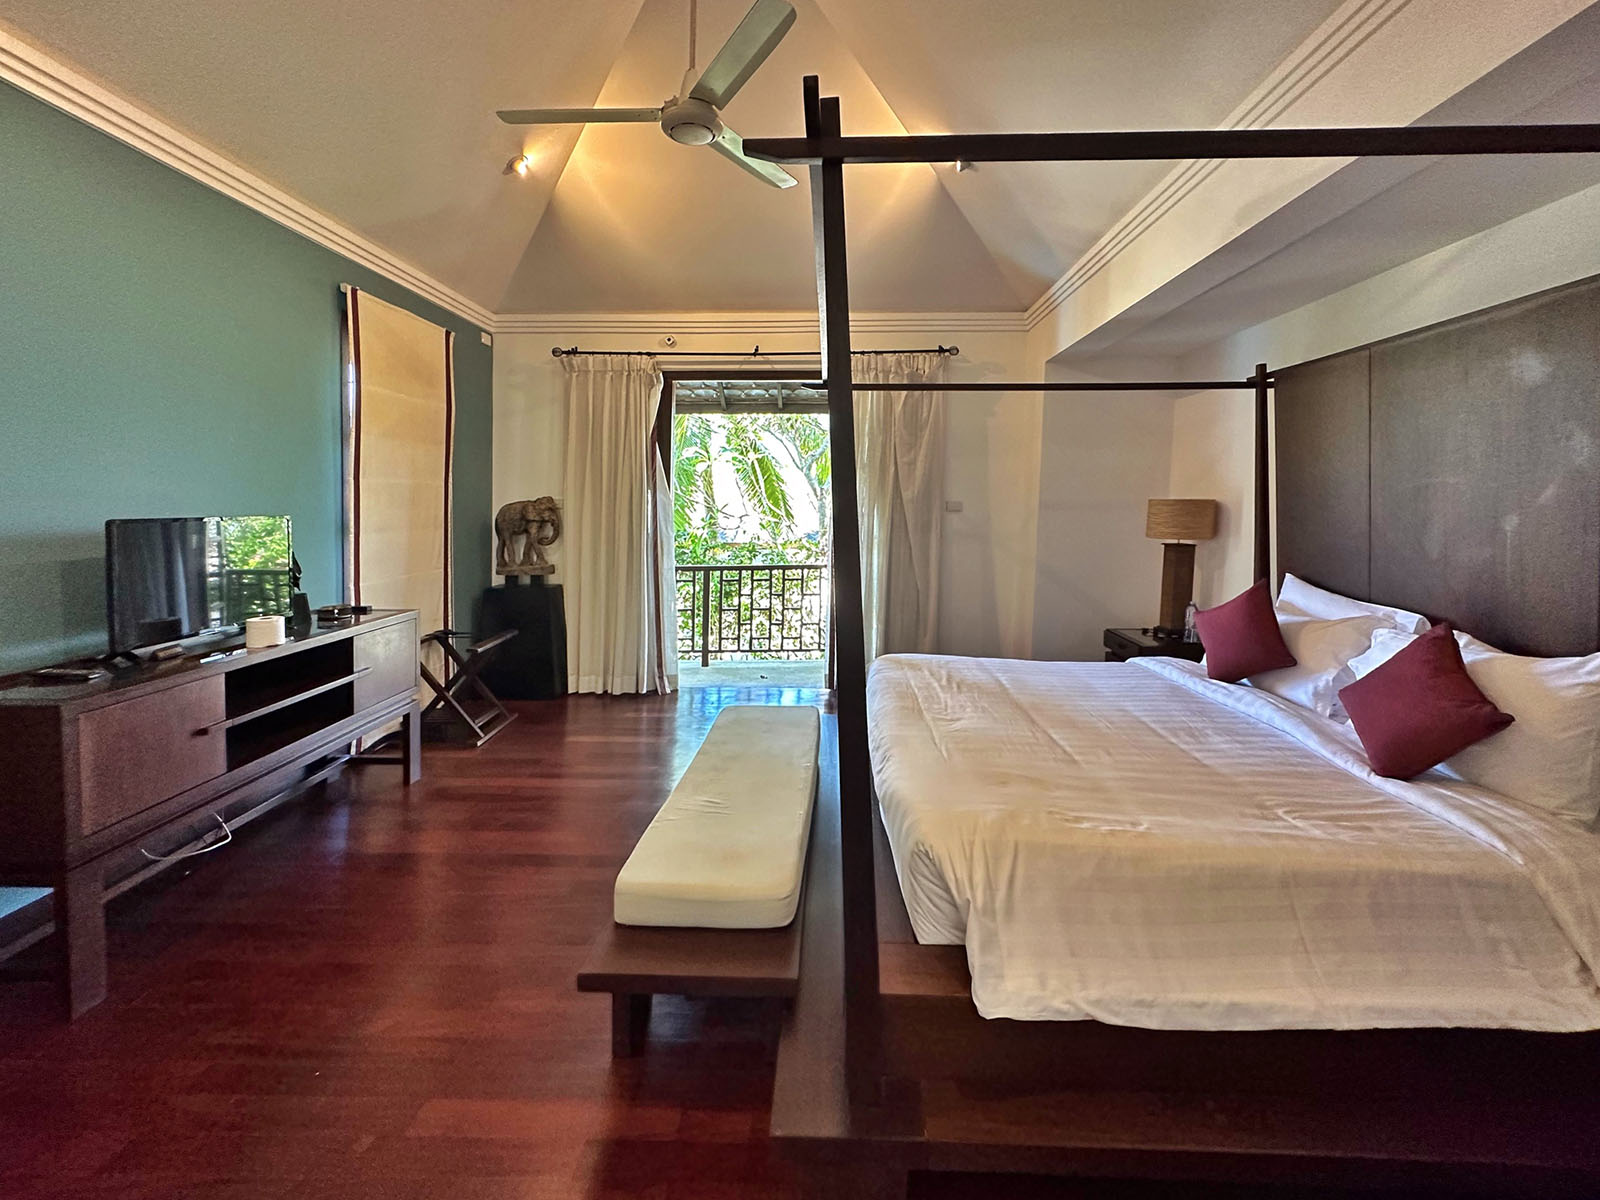 Kanda Residence – Balinese Beachside 3 Bedroom Pool Villa in Choengmon for sale: Kanda Residence – Balinese Beachside 3 Bedroom Pool Villa in Choengmon for sale